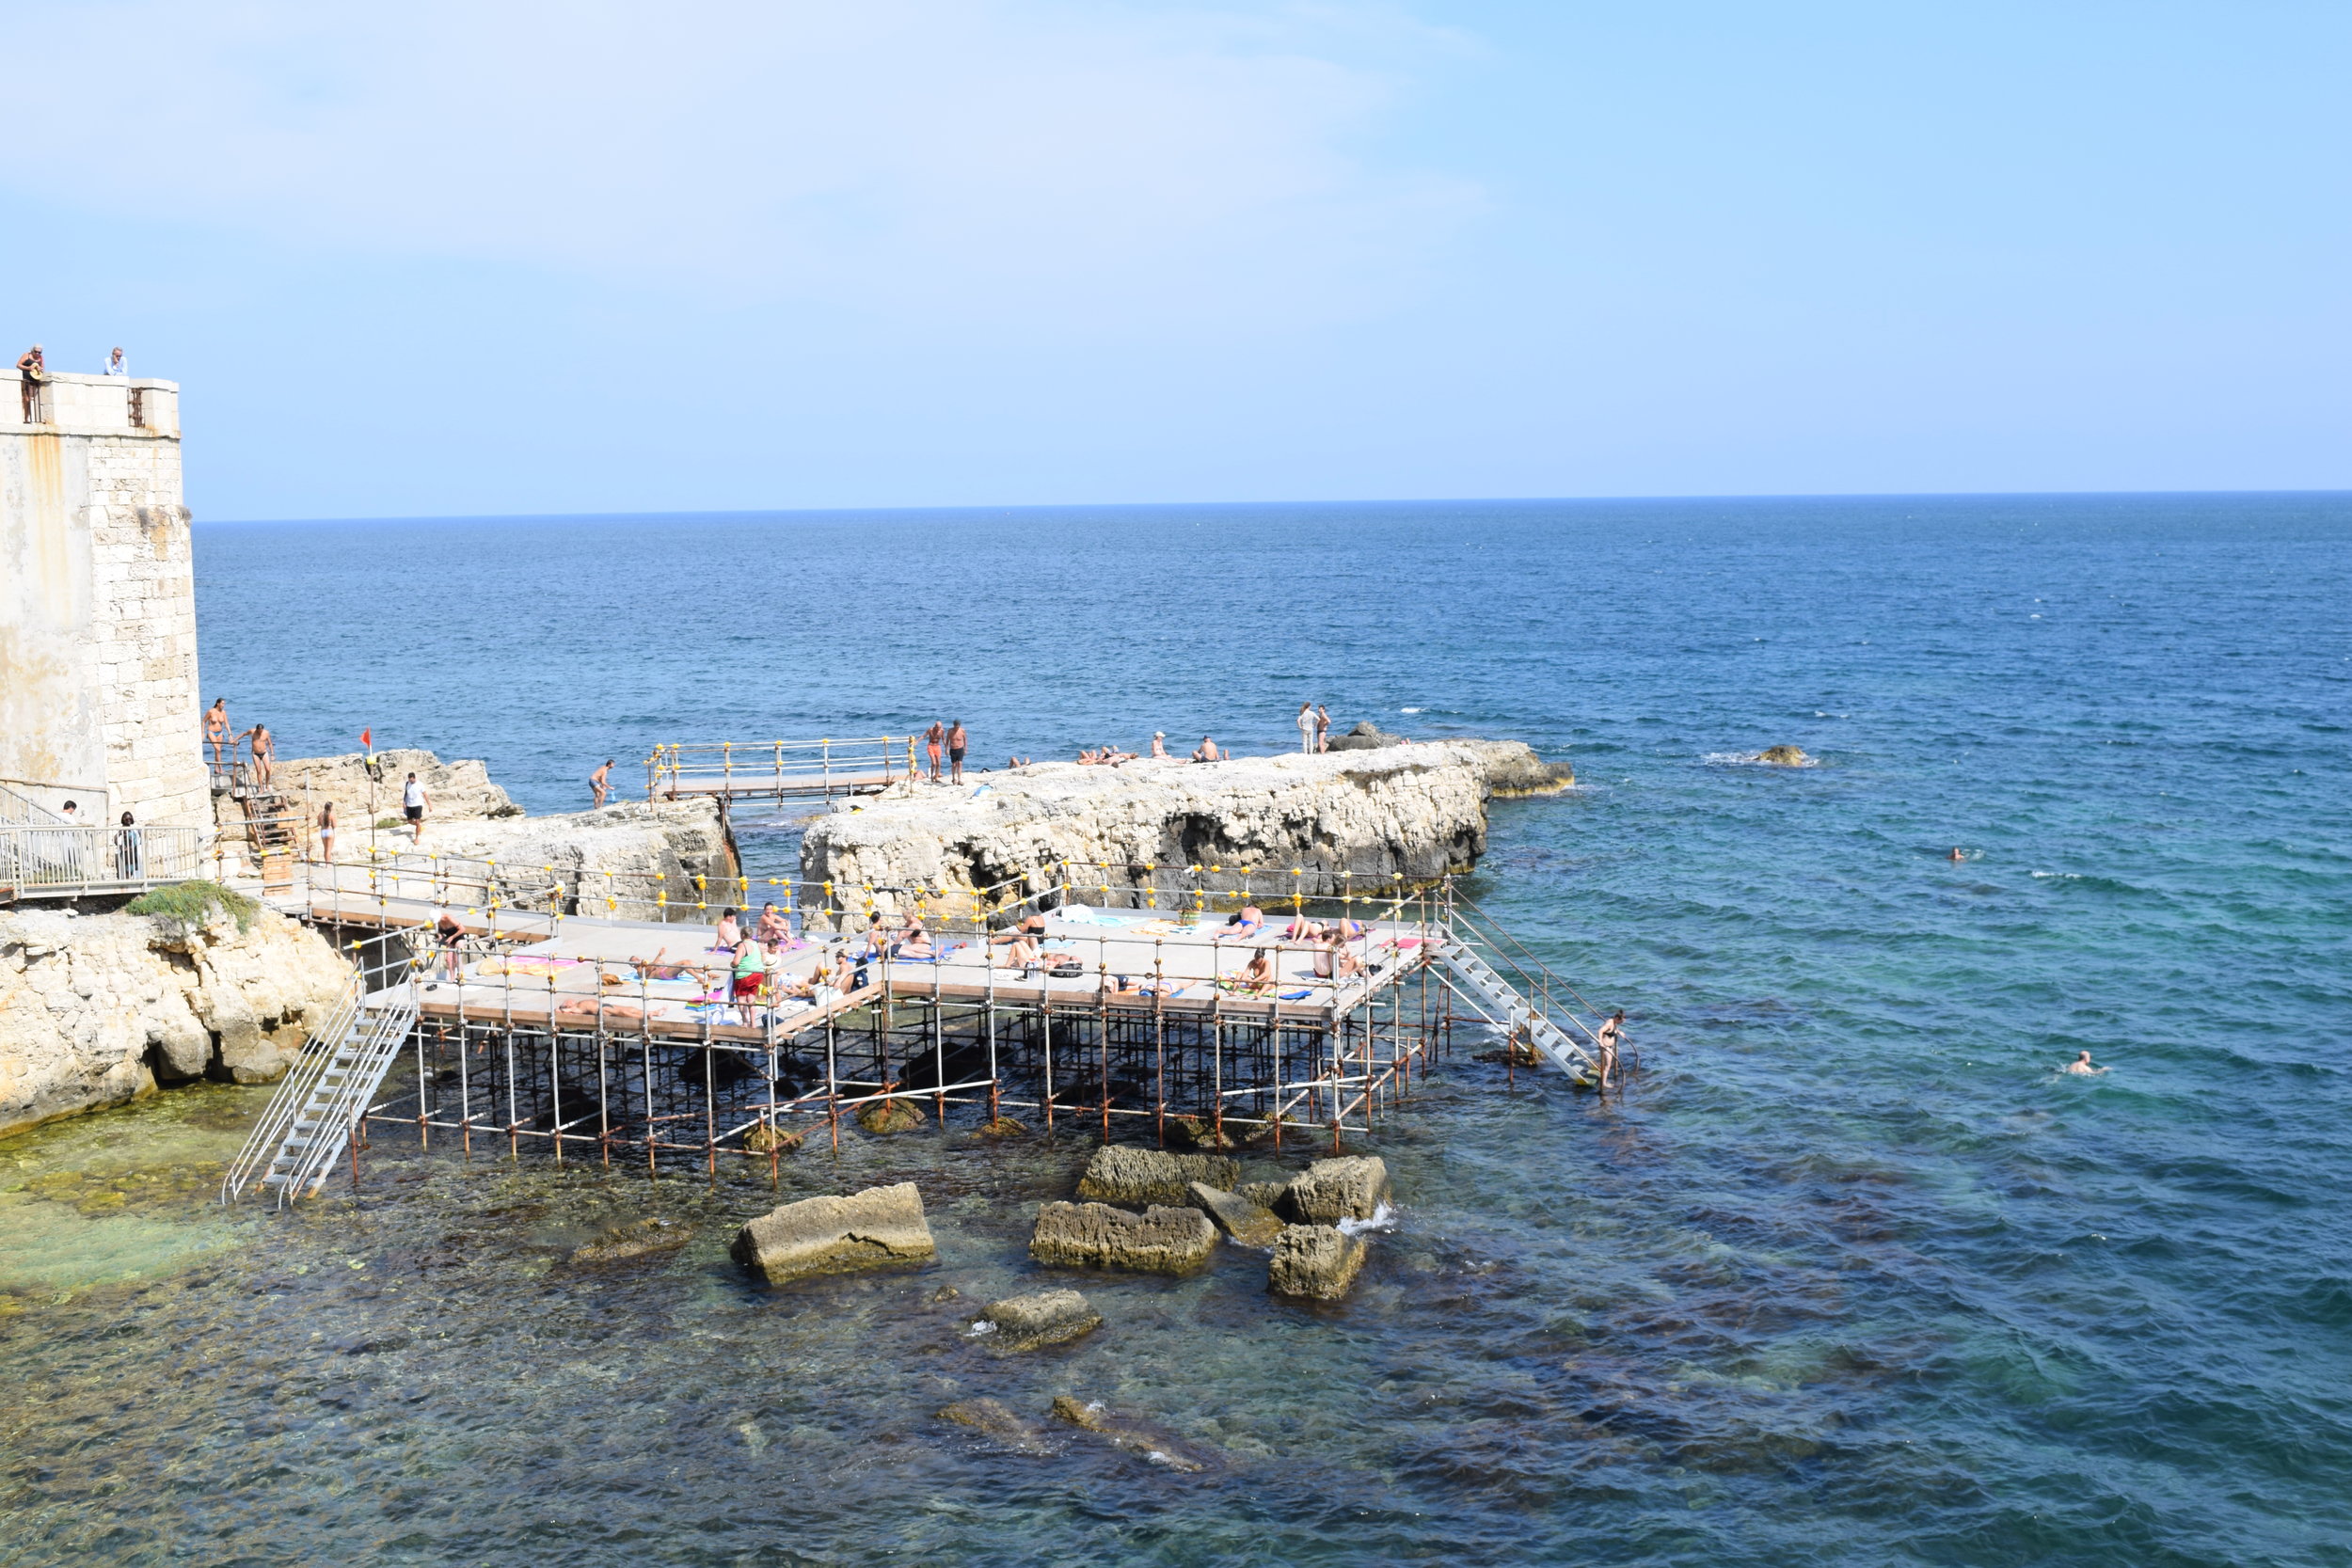 A platform that serves as a beach in Ortigia